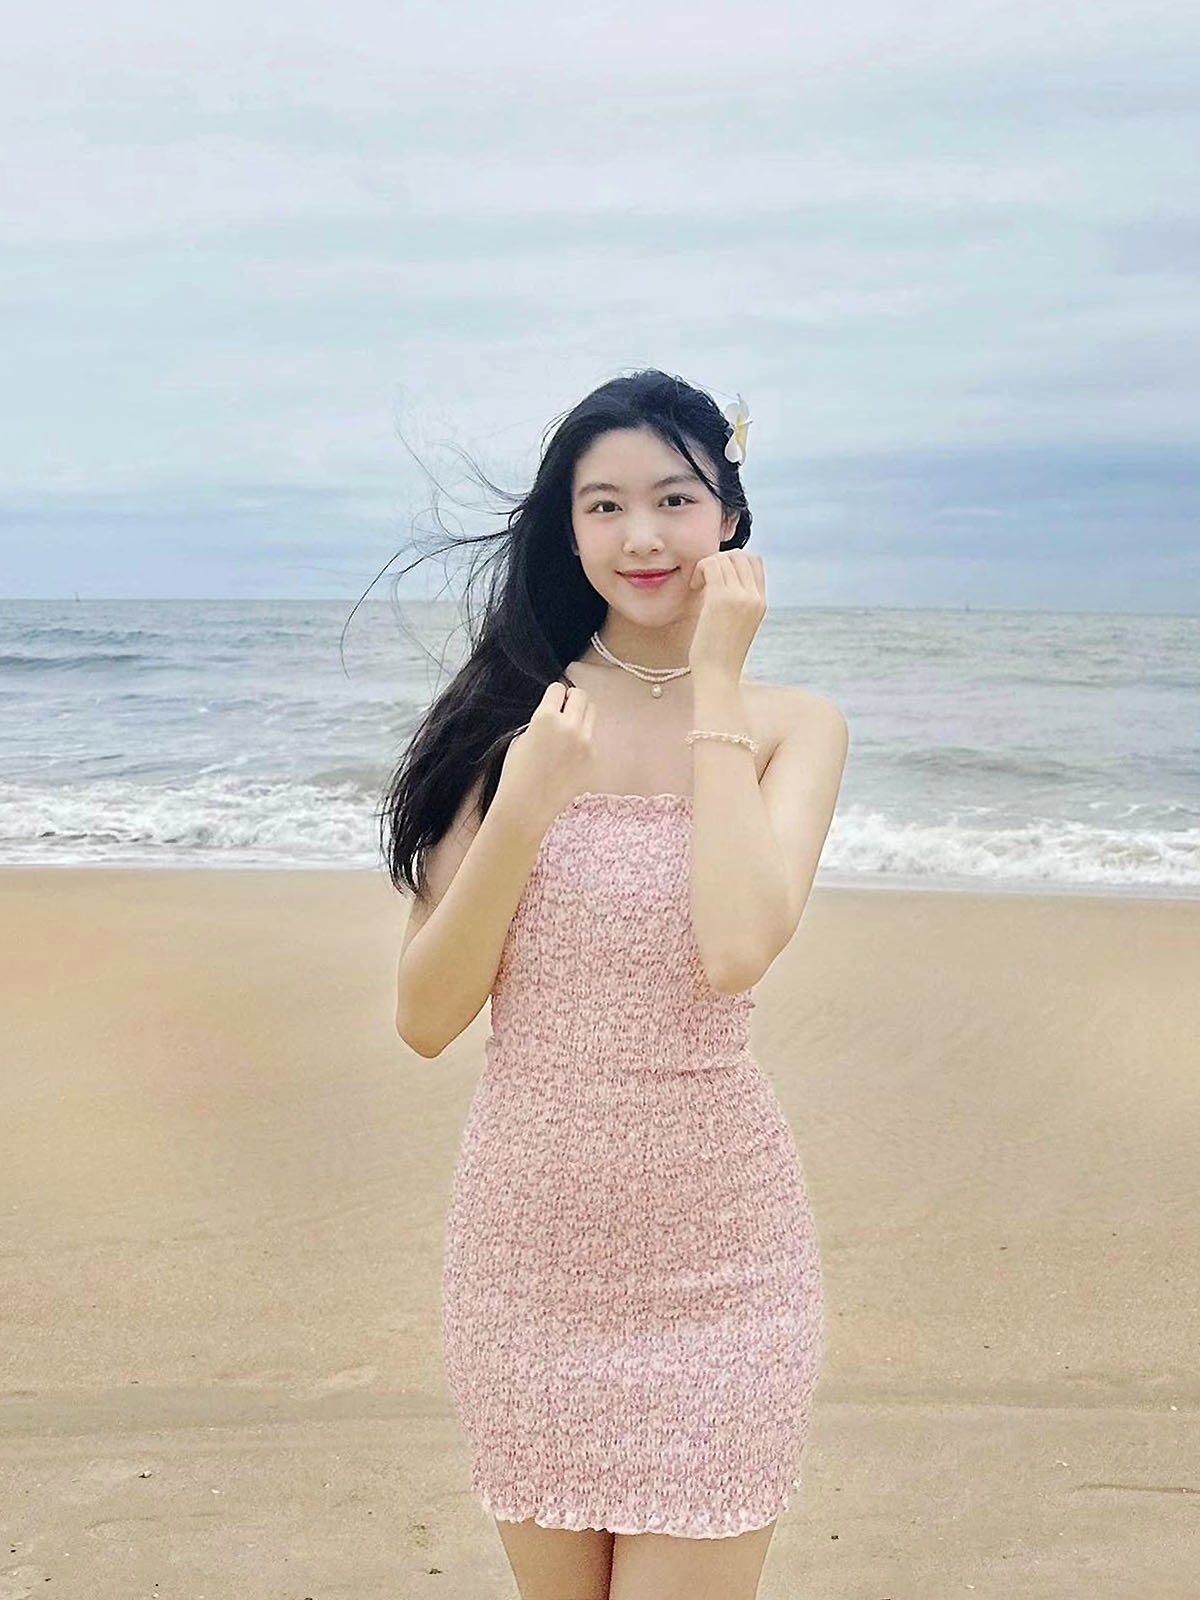 Gu mặc đi biển thu hút nhất từ trước đến nay của con gái Quyền Linh, Lưu Thiên Hương - 1